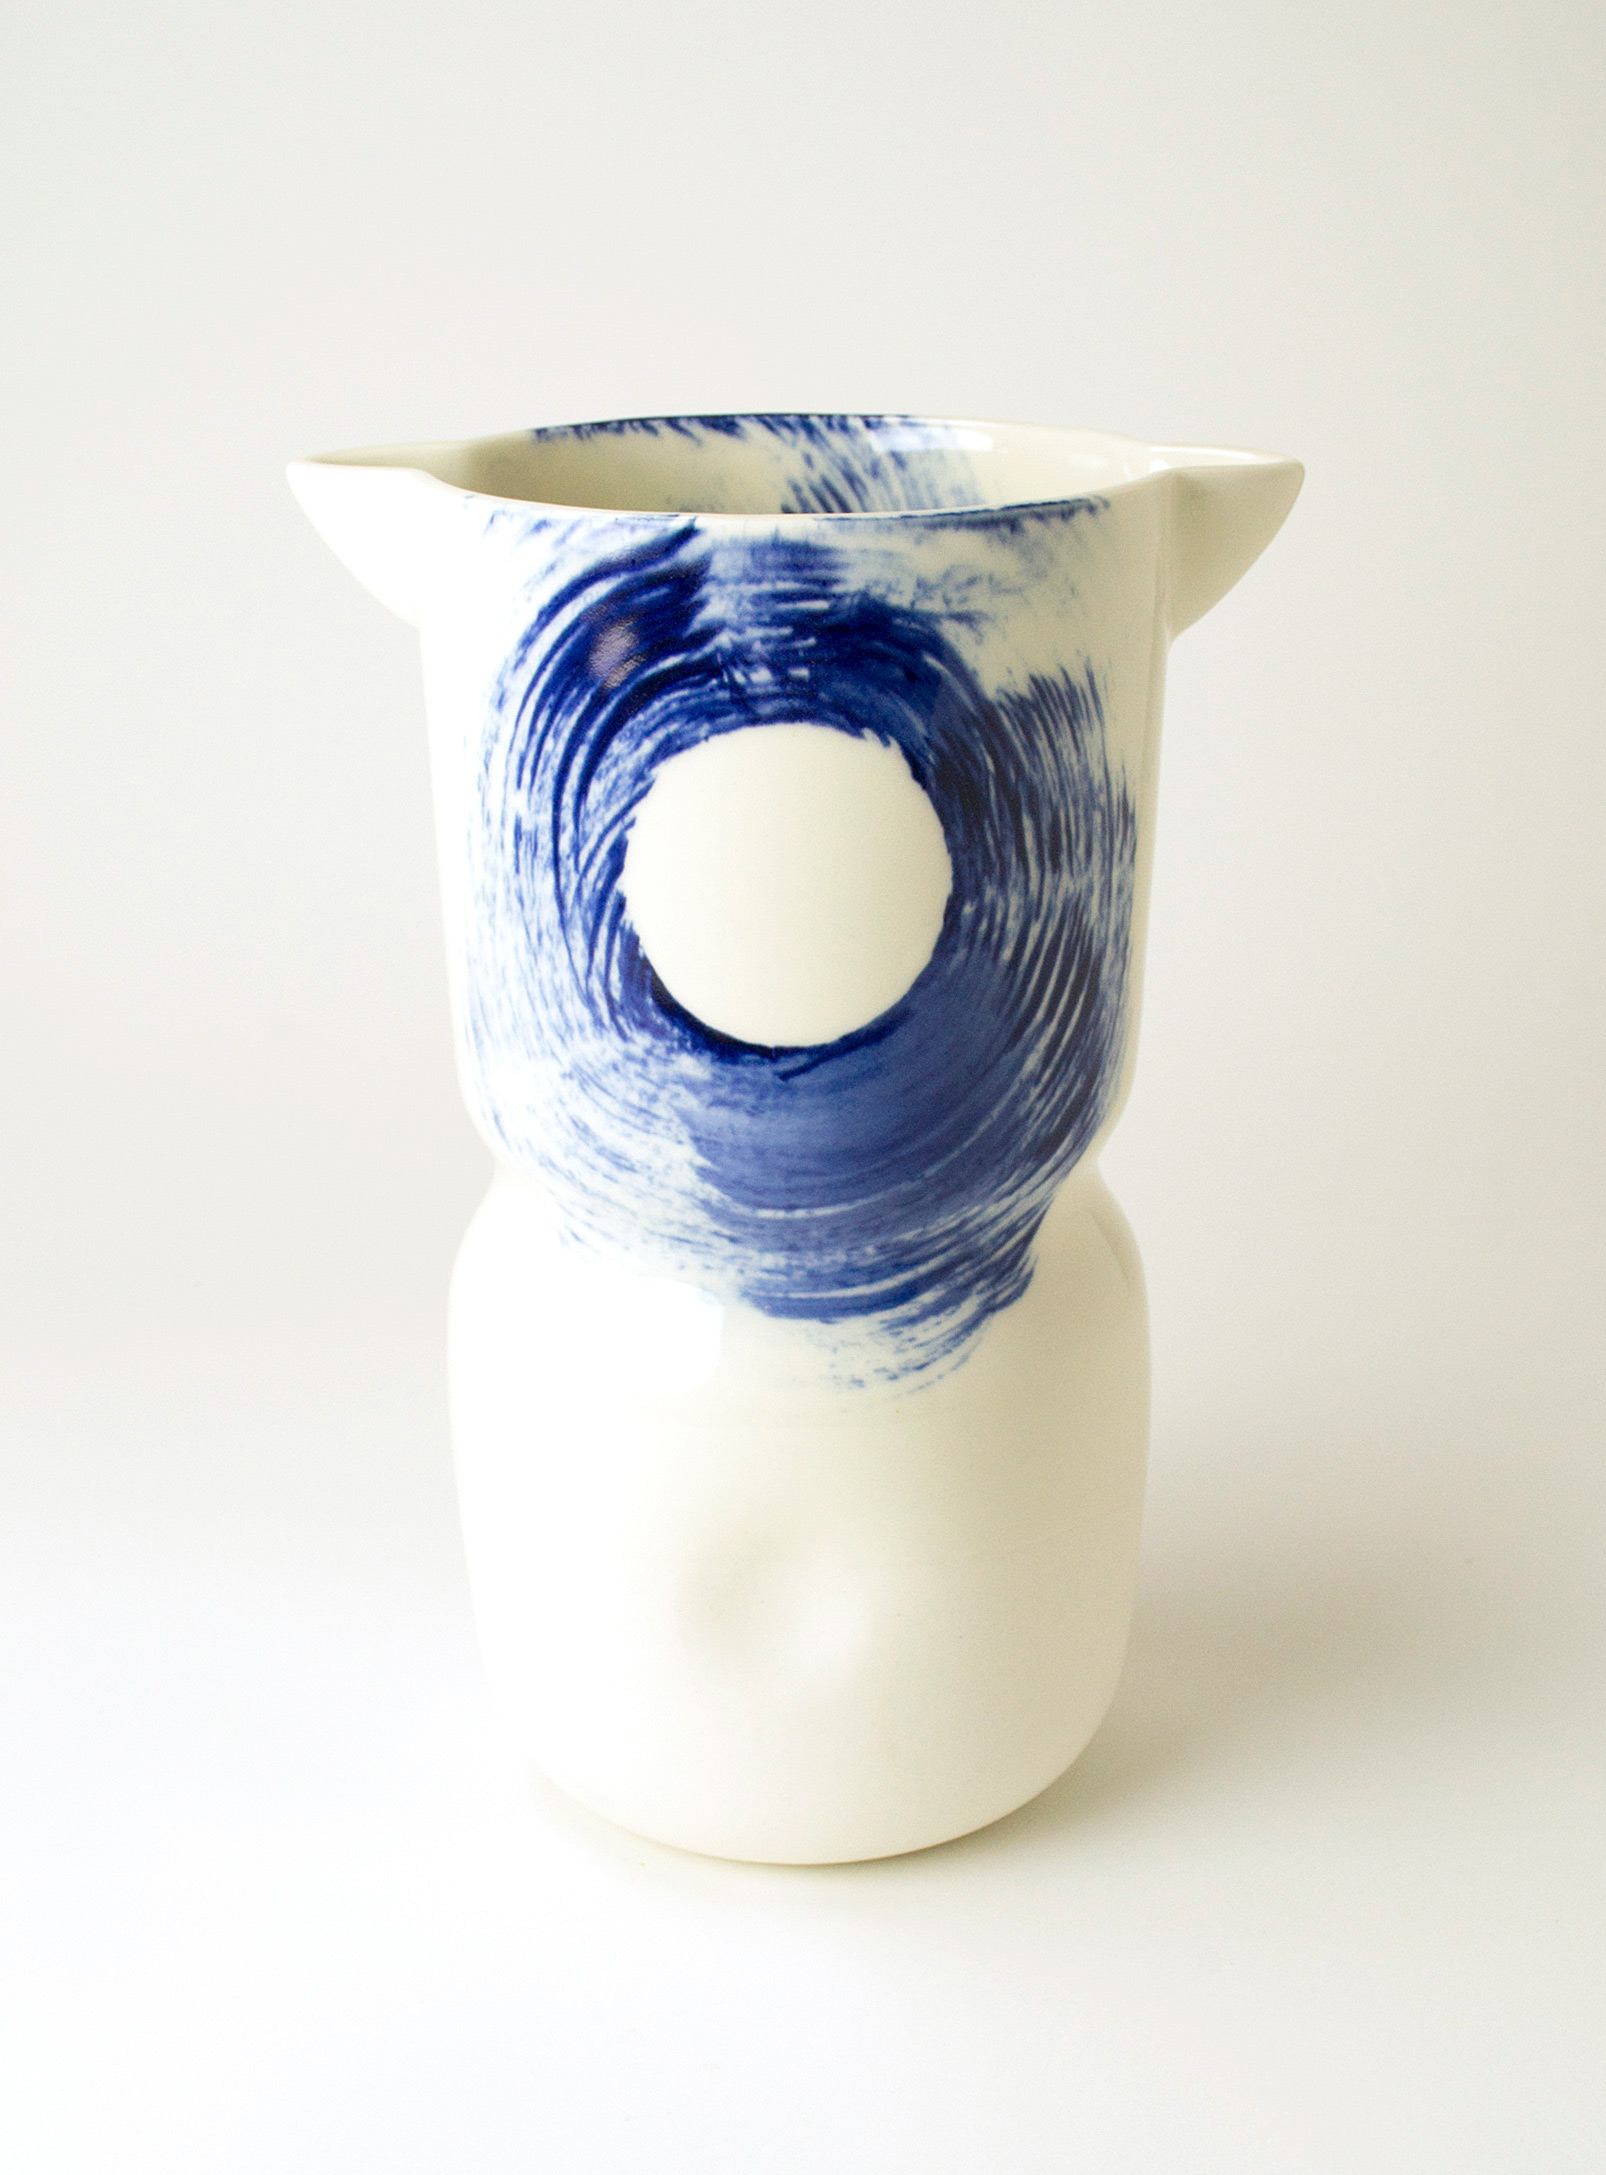 Eve m Laliberté - Brush strokes multipurpose vase 22 cm tall